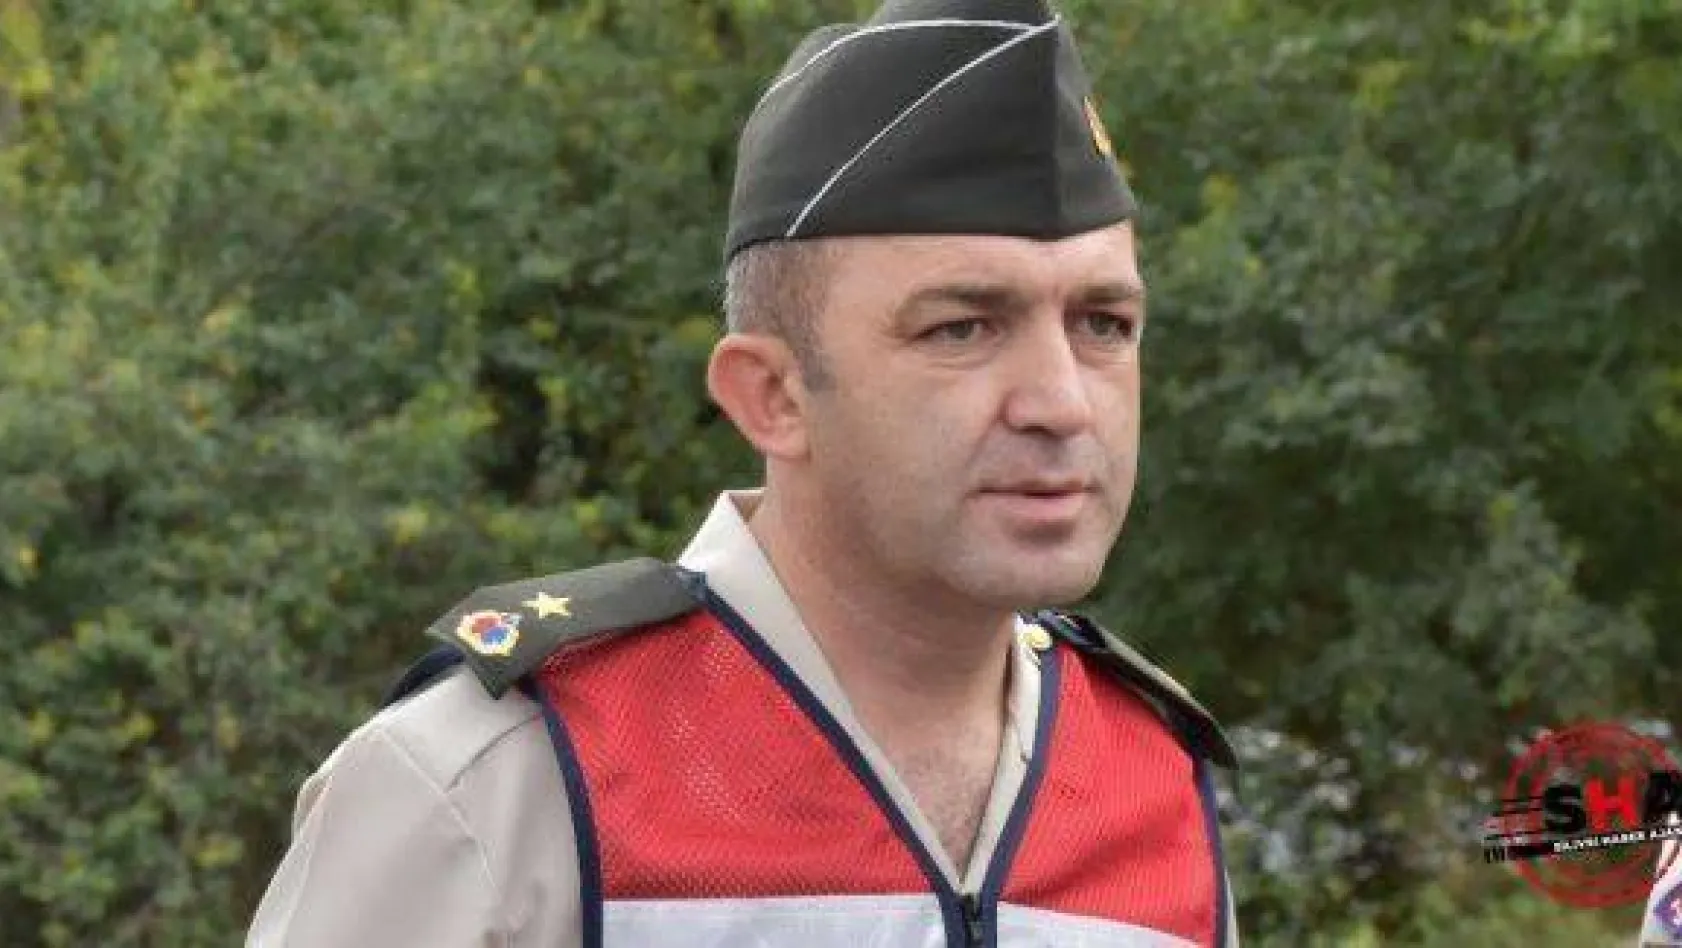 Silivri İlçe Jandarma Komutanı göreve başladı.